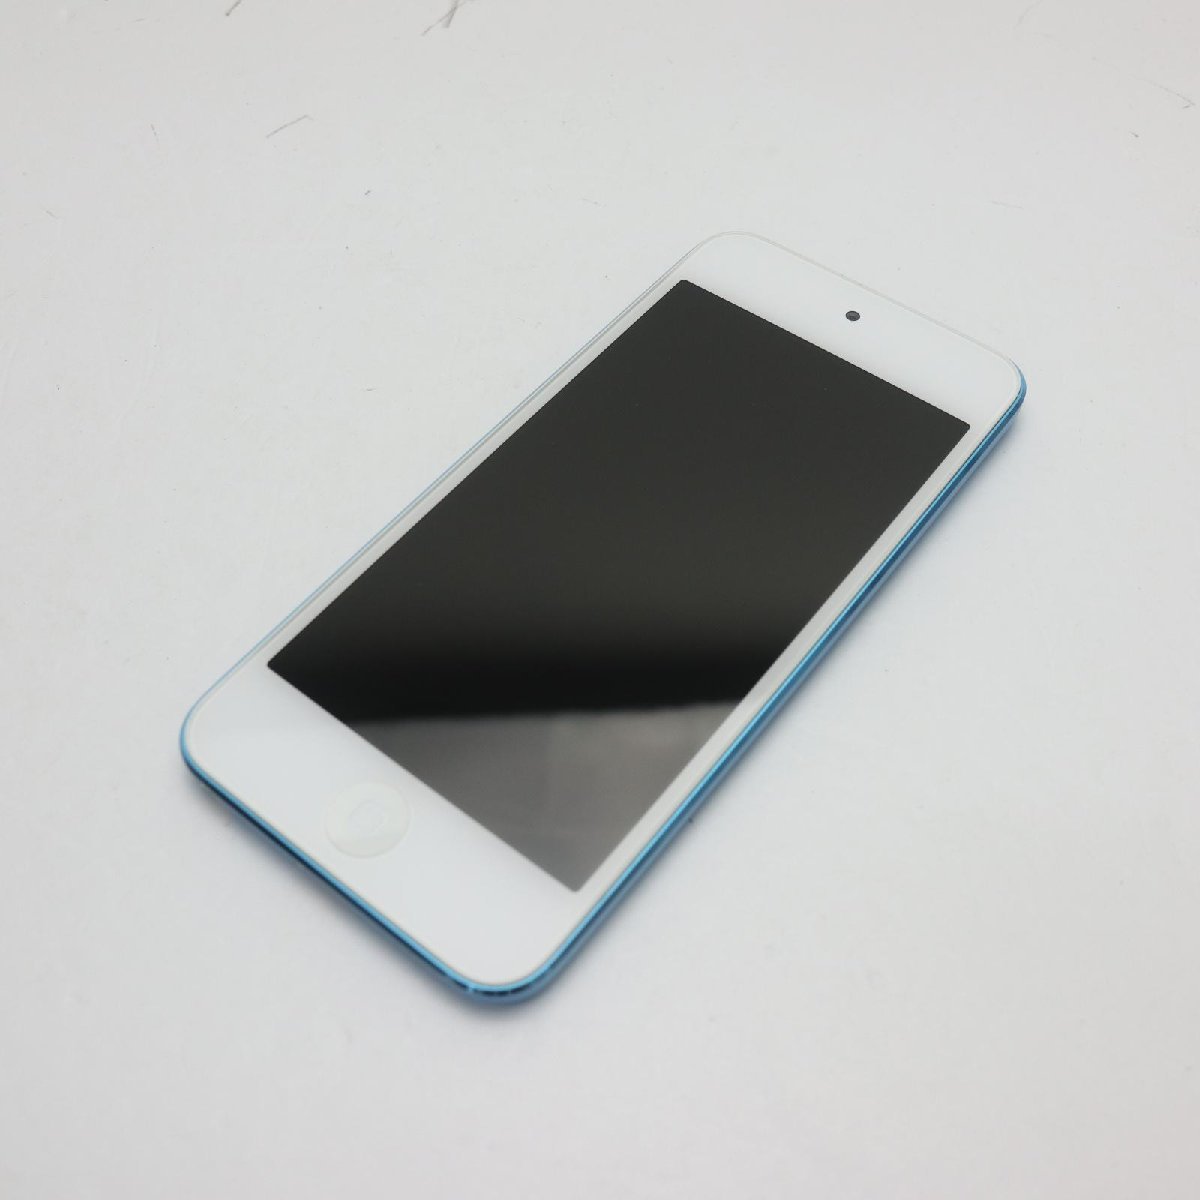 新品同様 iPod touch 第5世代 32GB ブルー 即日発送 MD717J/A MD717J/A Apple 本体 あすつく 土日祝発送OK_画像1